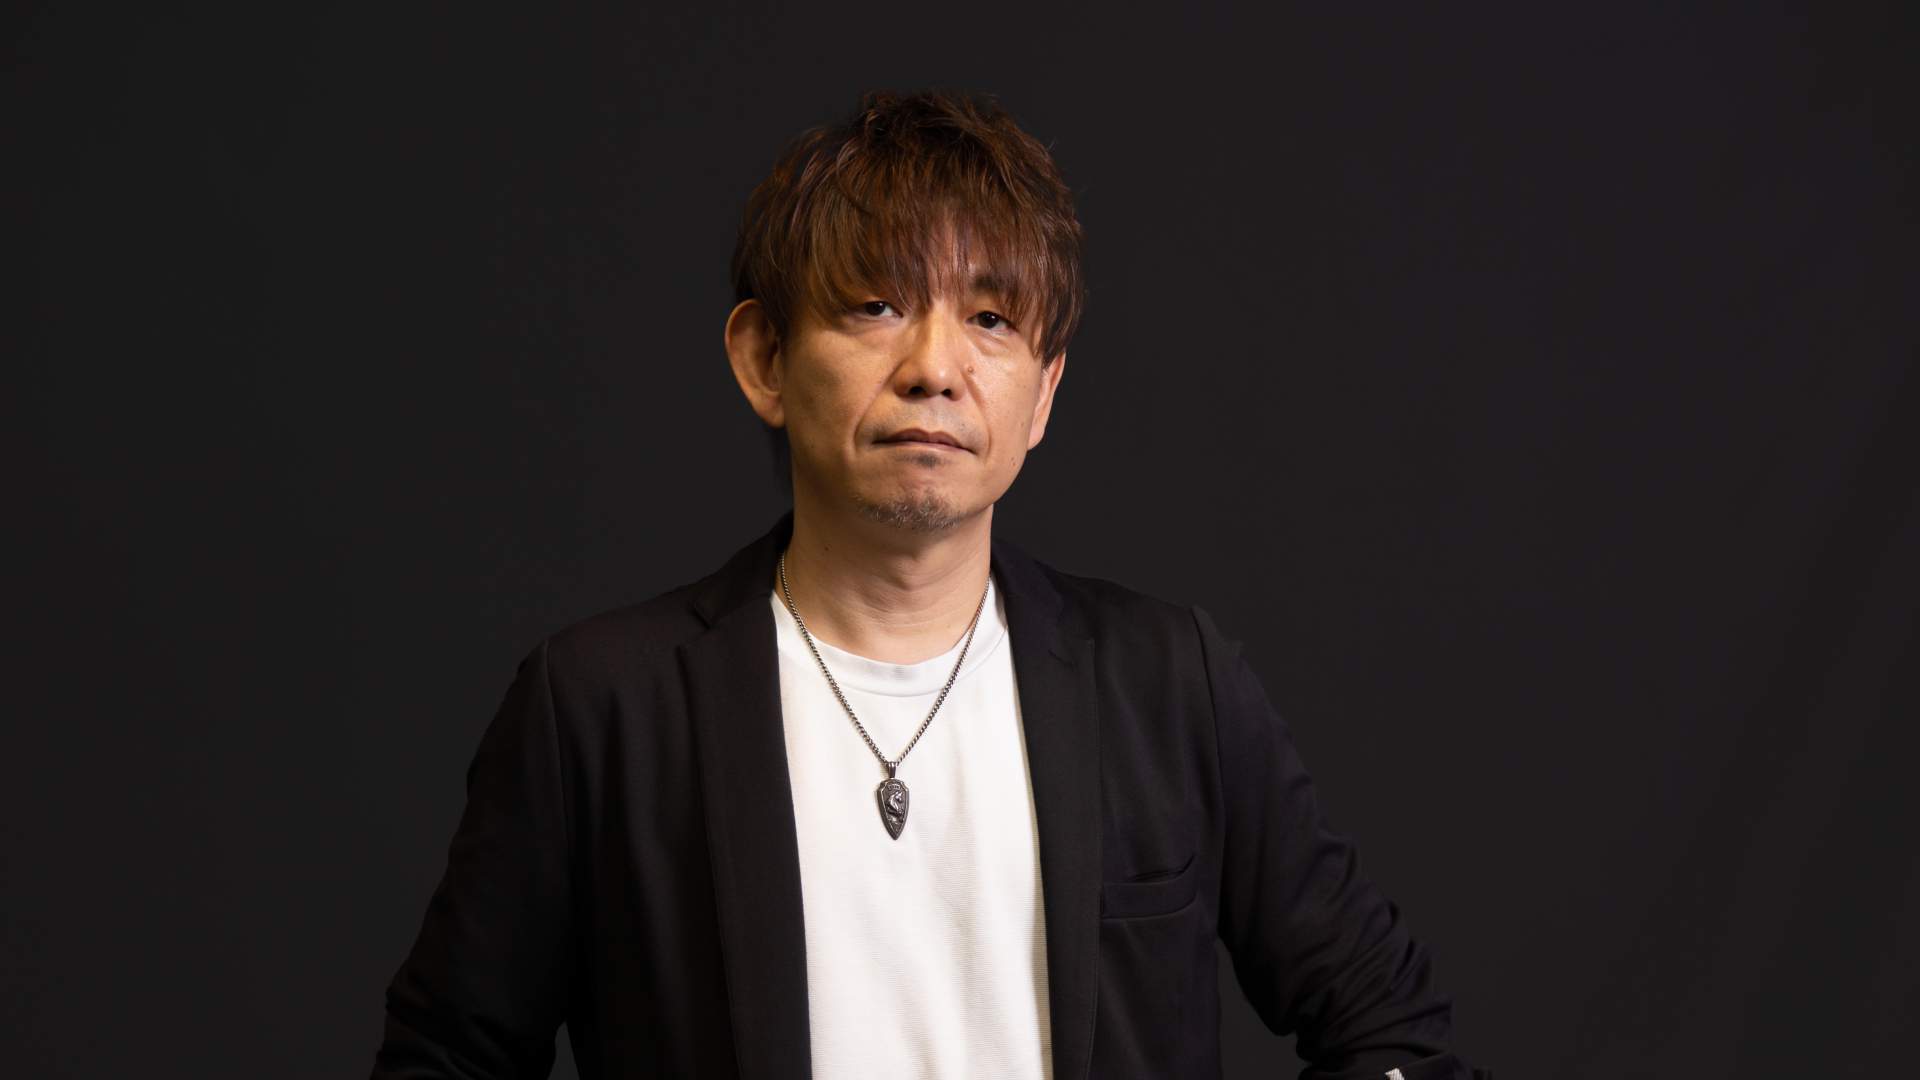 FINAL FANTASY XVI Producer Naoki Yoshida